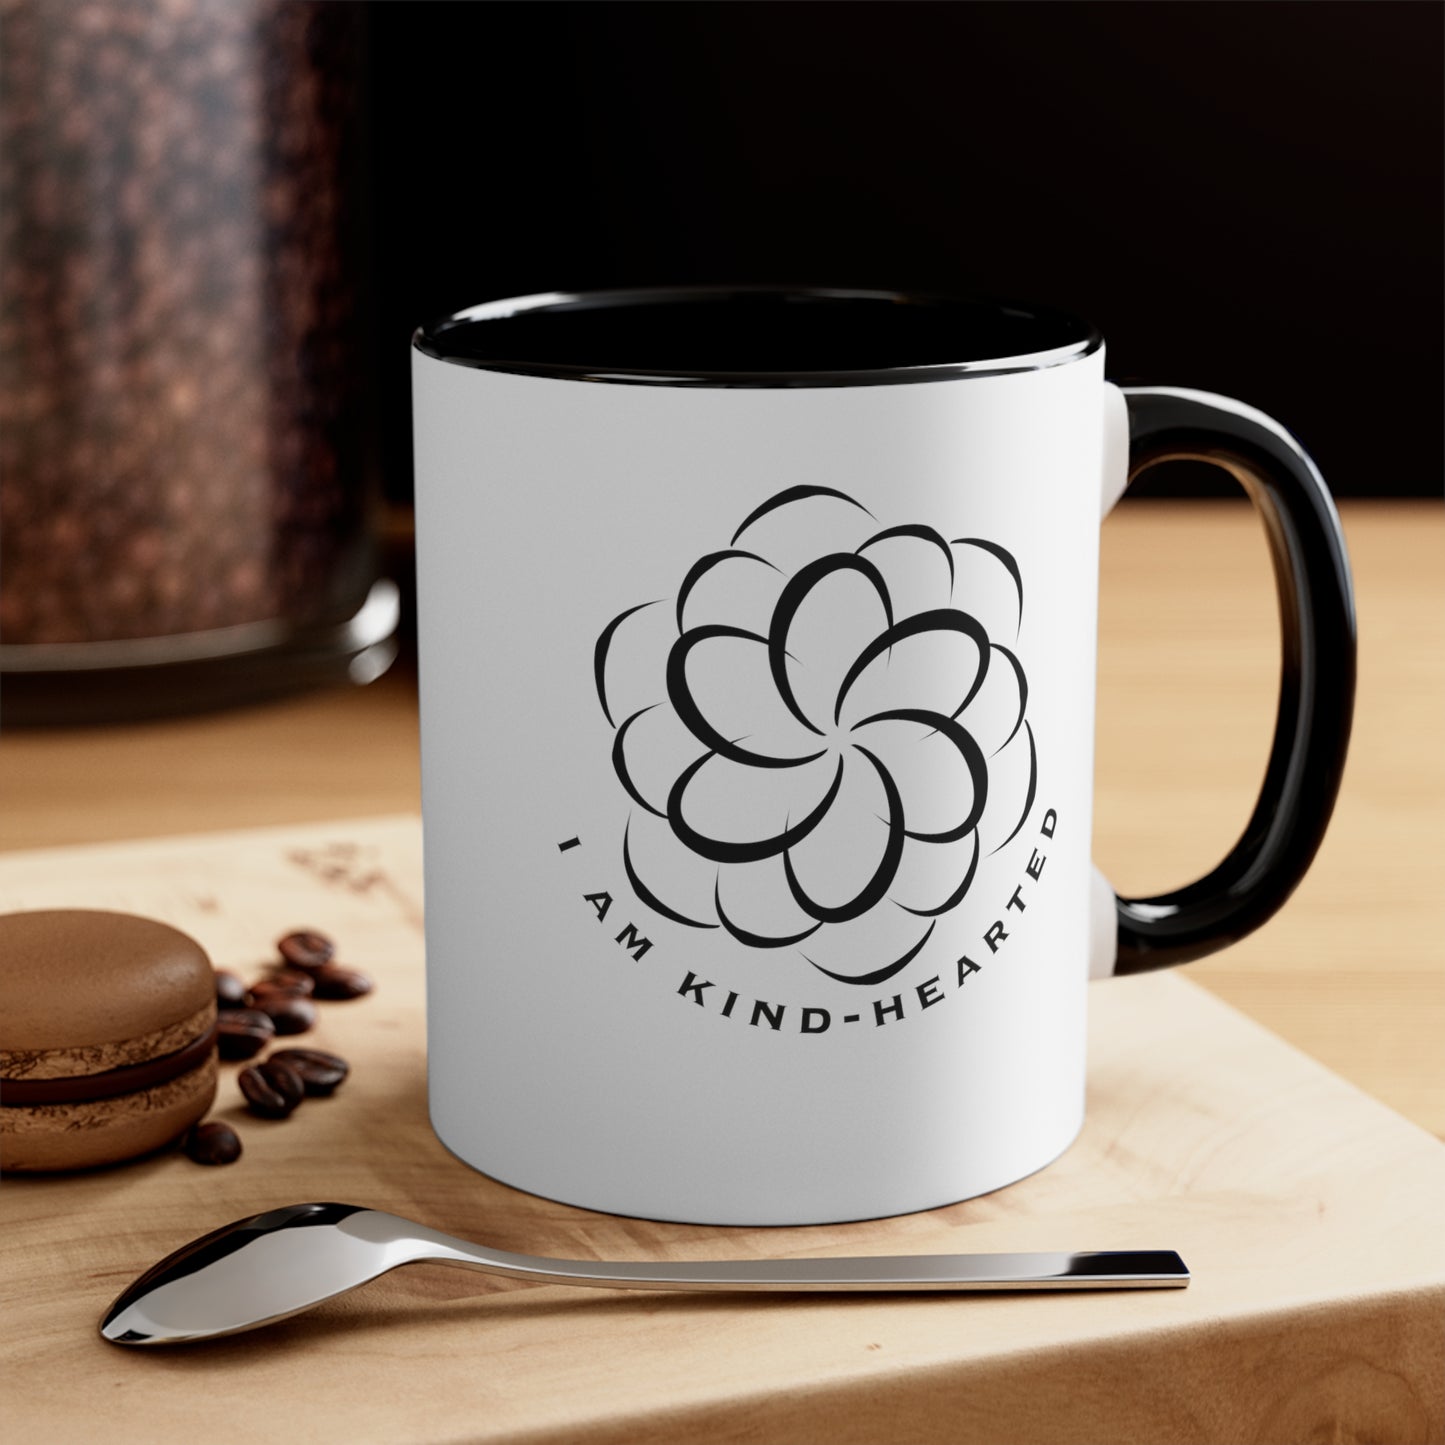 I Am Kind-Hearted Coffee Mug, 11oz